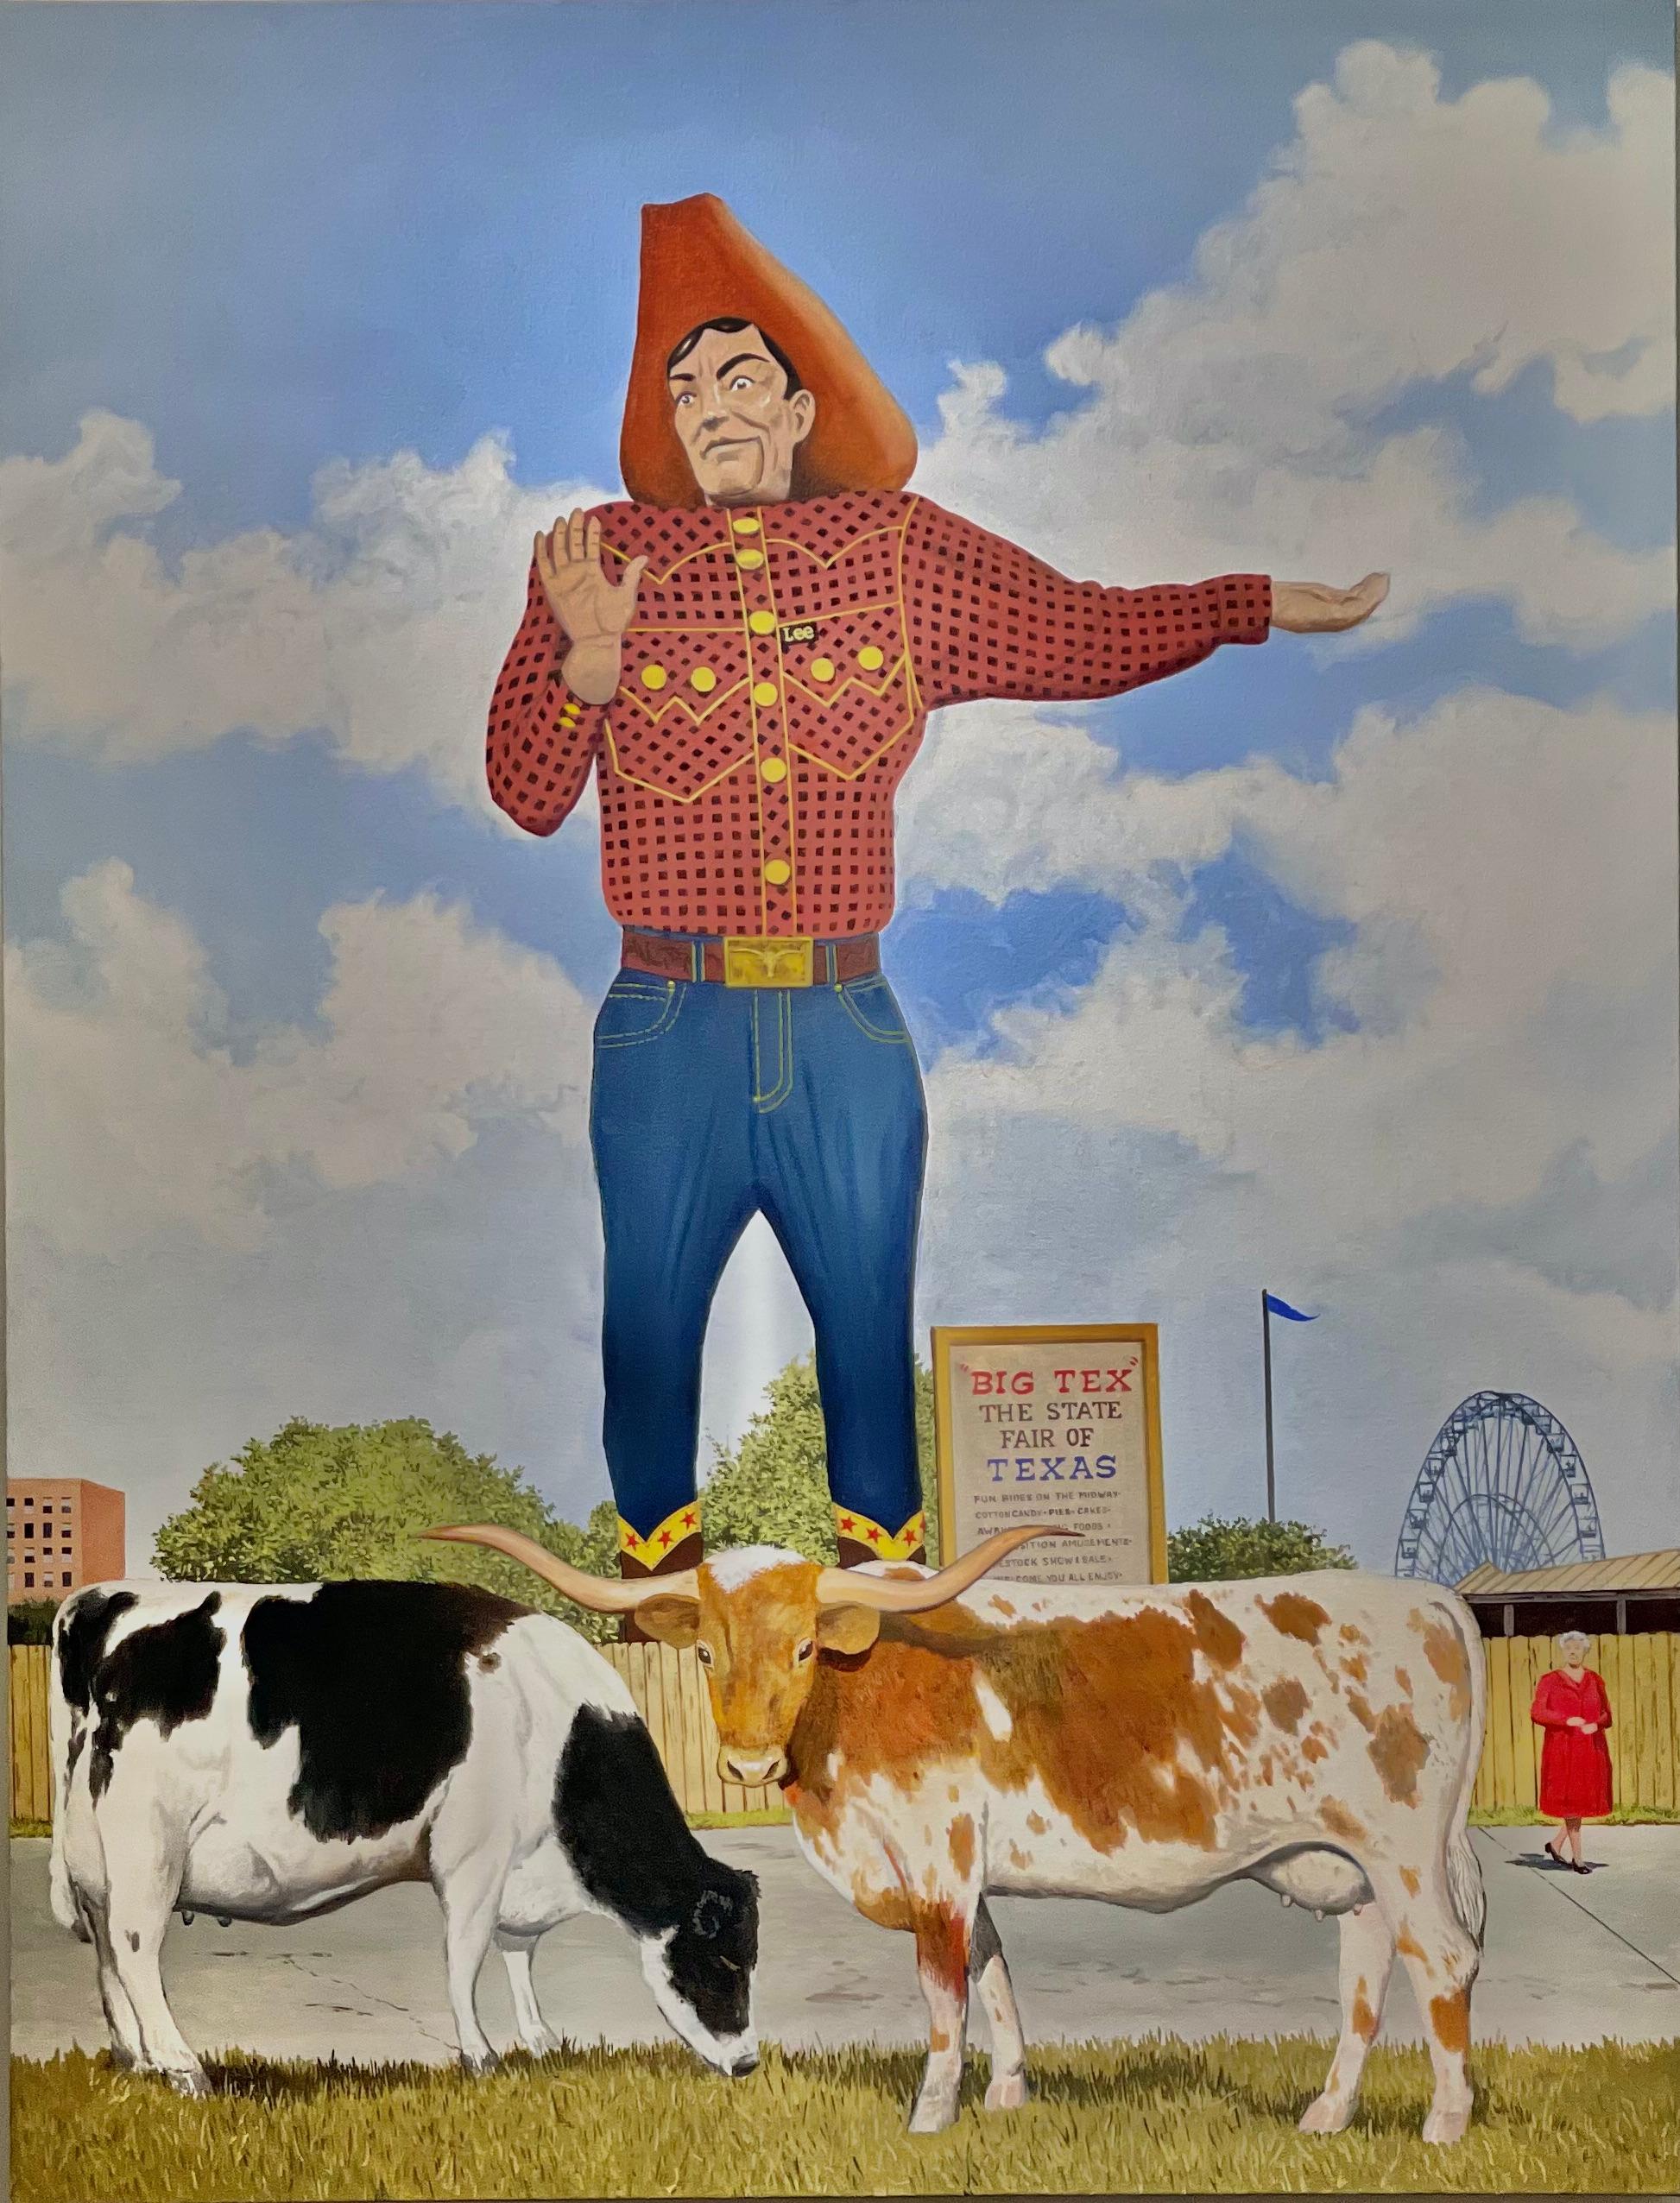 Zeitgenössisches amerikanisches Ölgemälde mit Big Tex, Cowboy und Texas State Fair